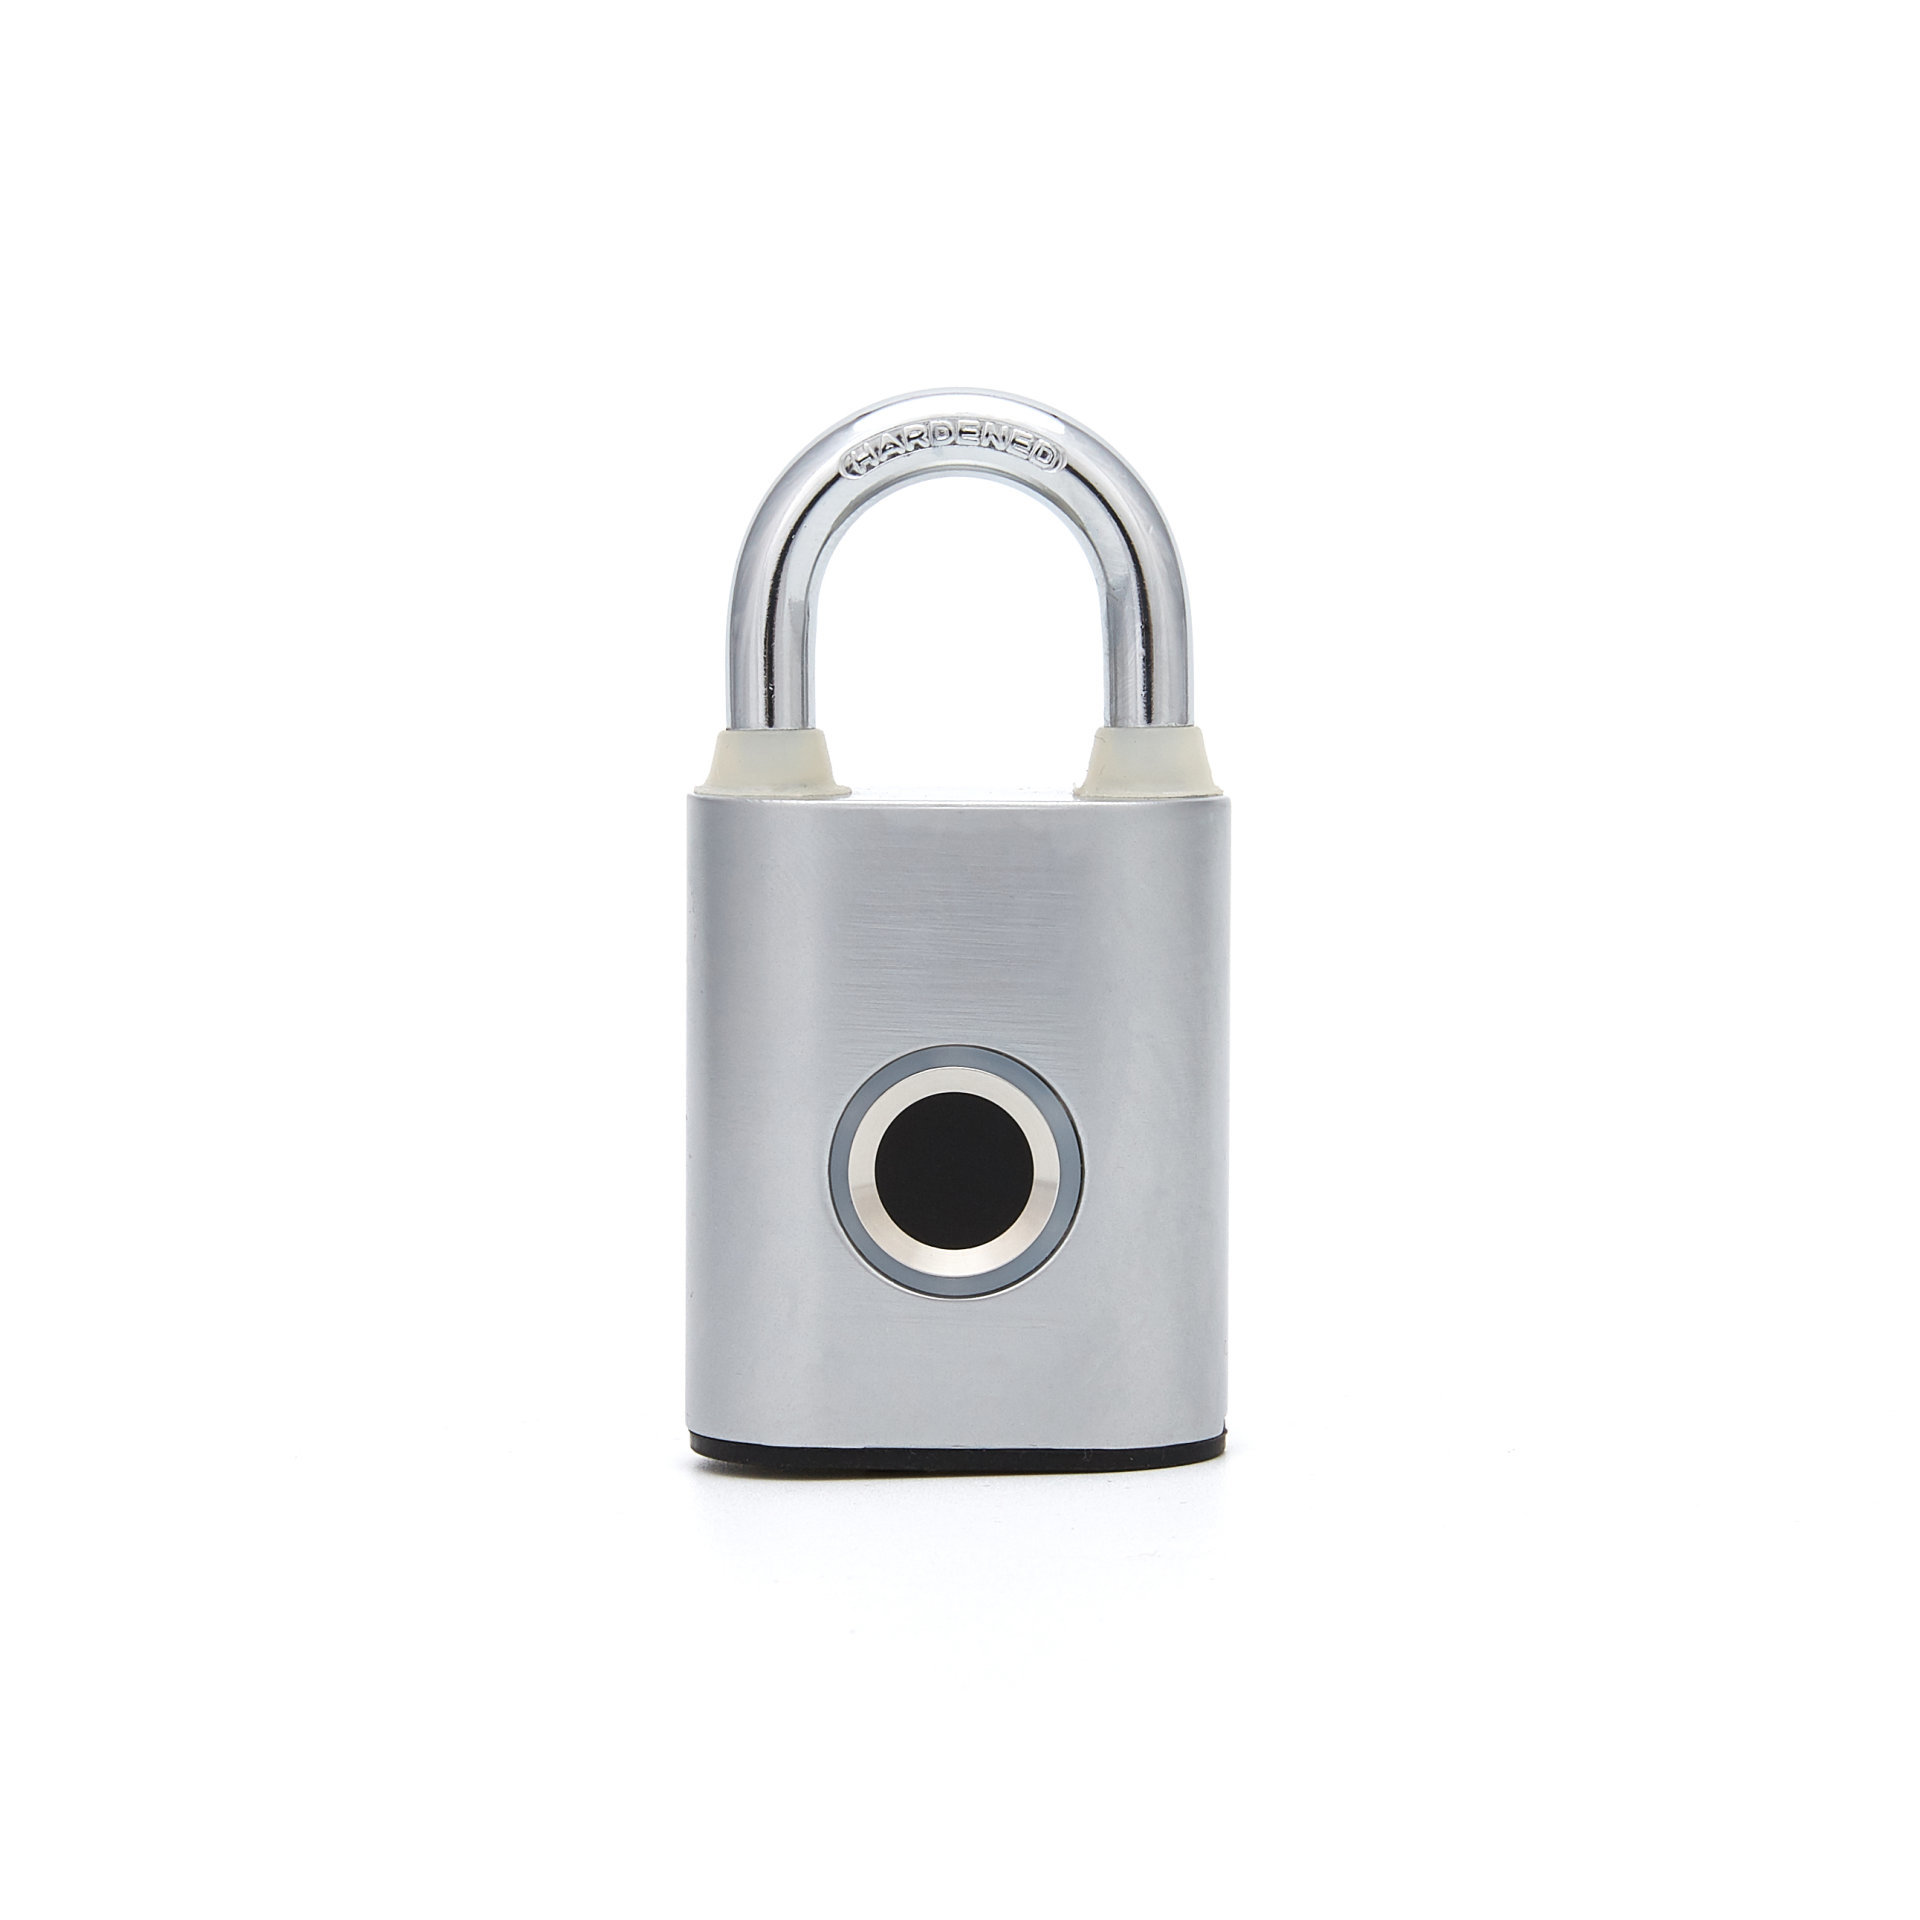  Smart Touch Gym Lock Metal Waterproof Intelligent Keyless for Locker